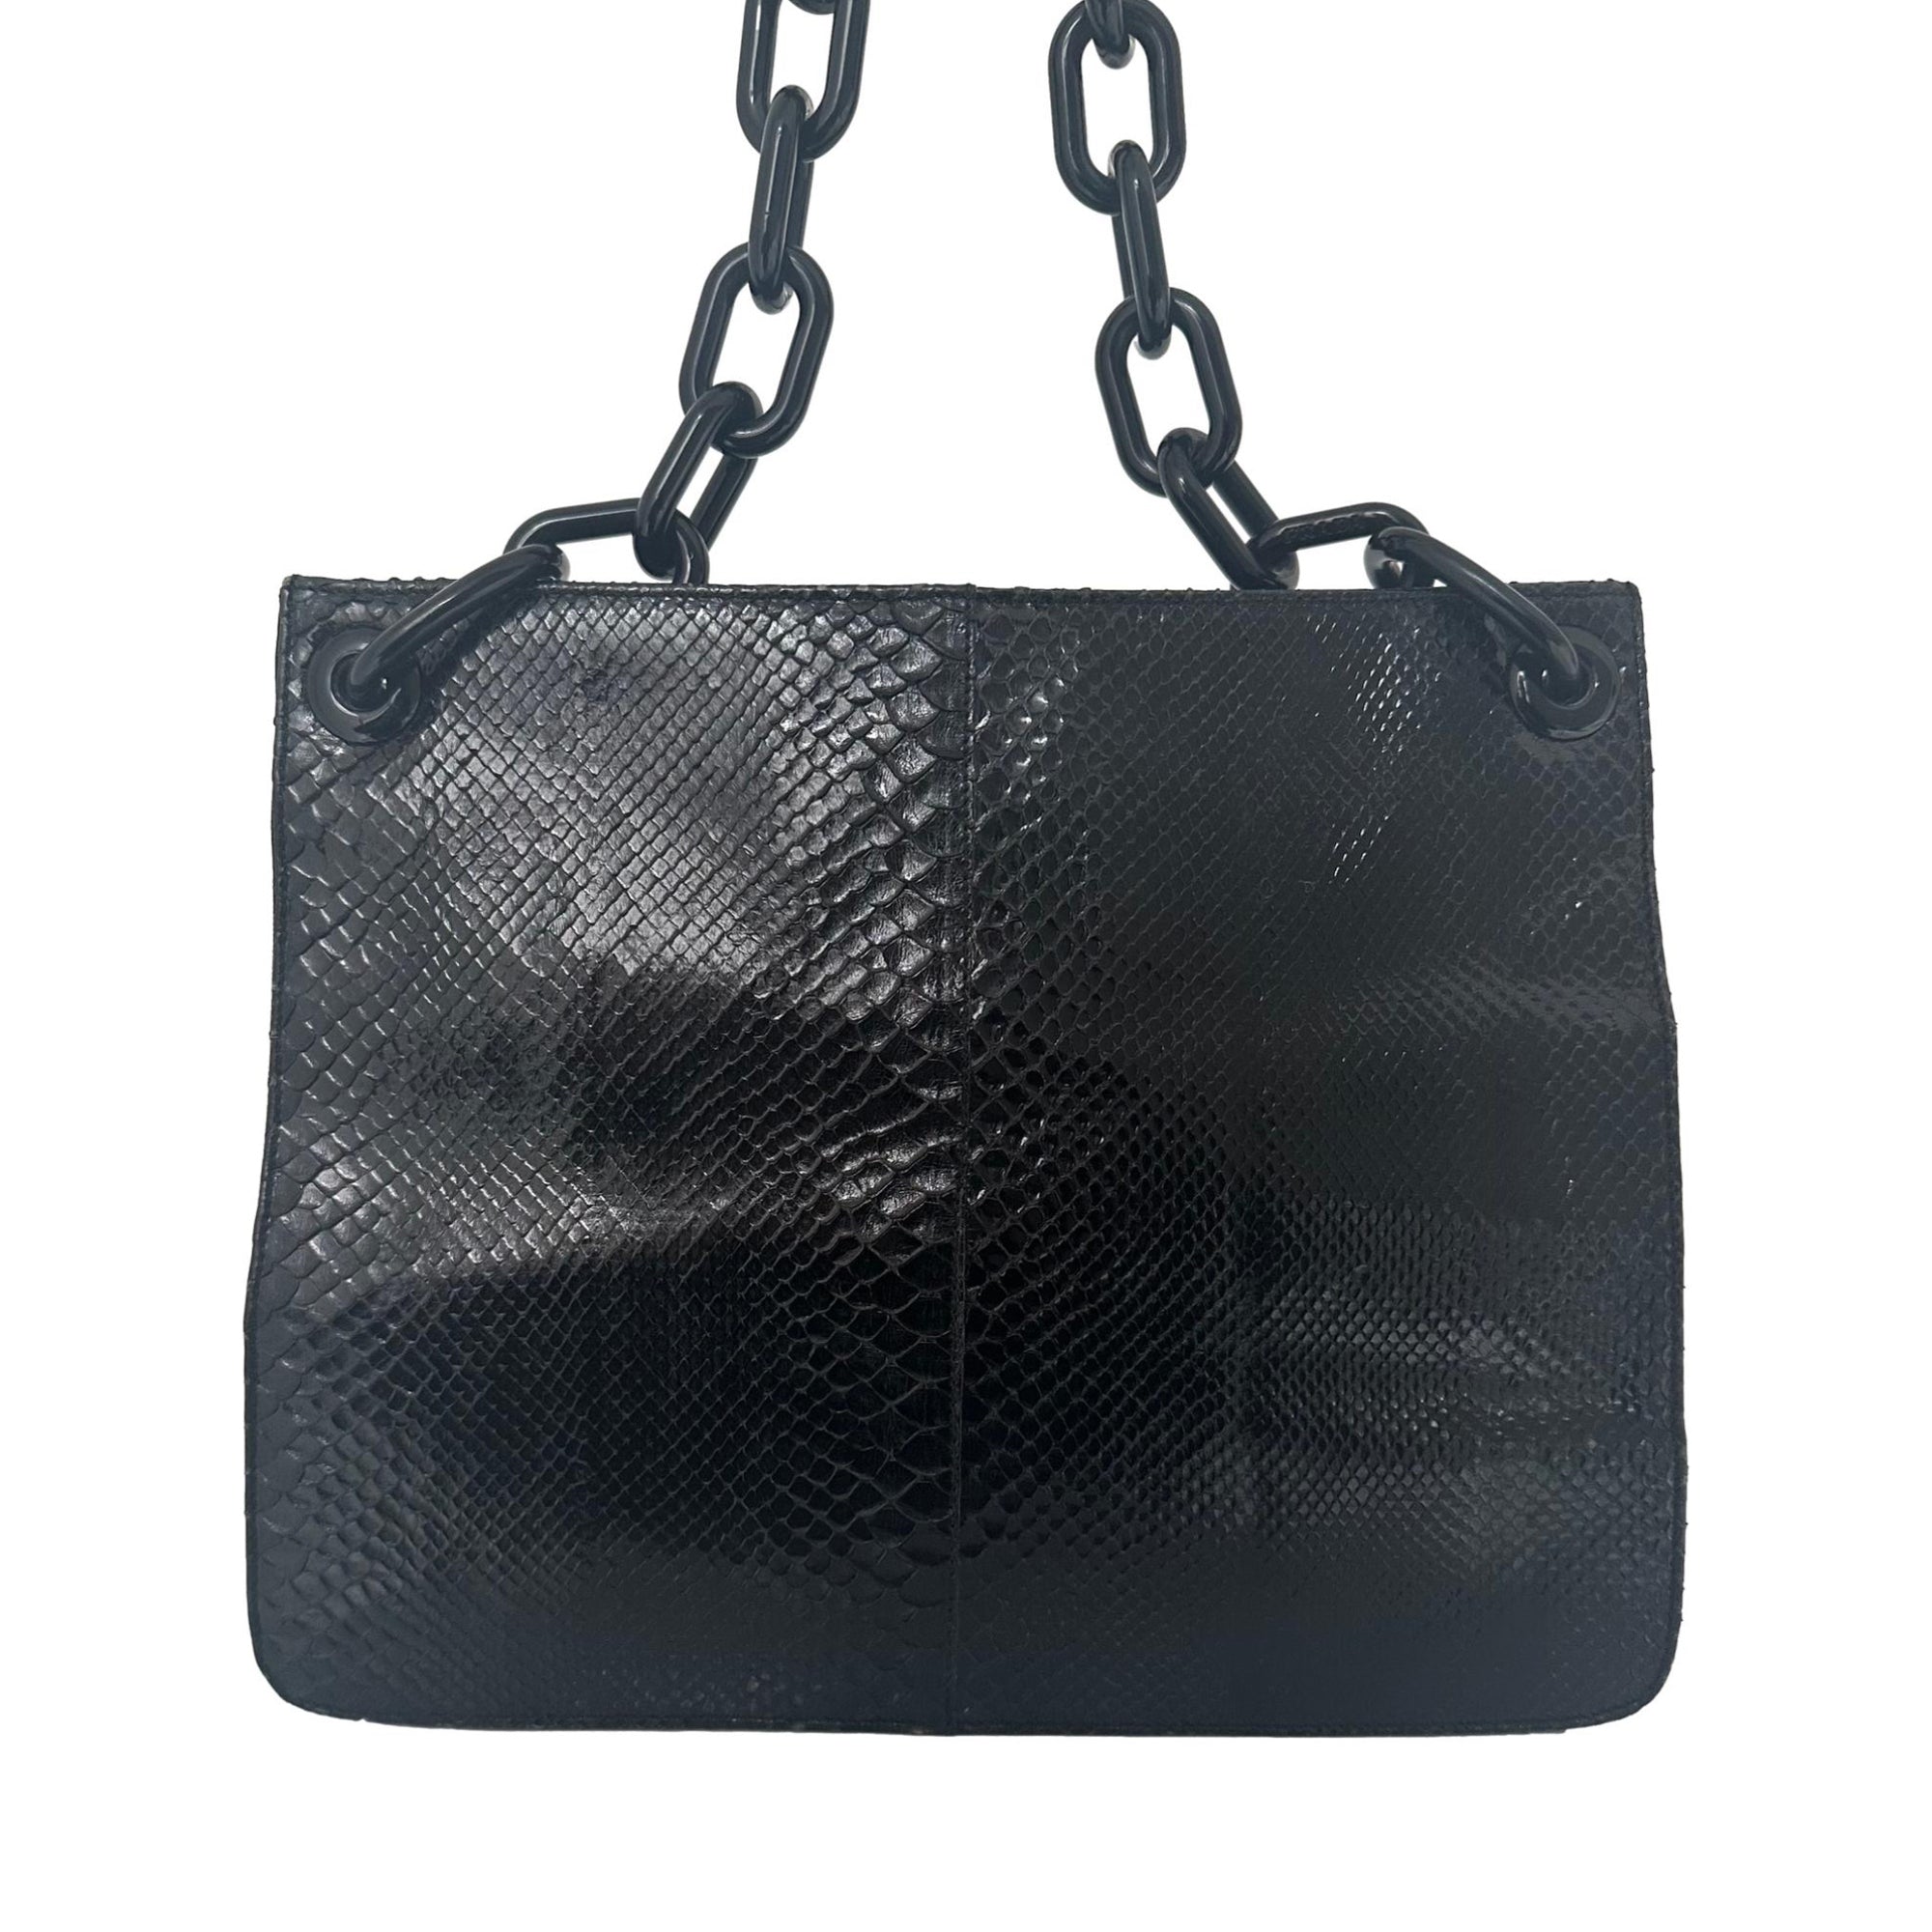 Prada Black Snakeskin Chain Bag